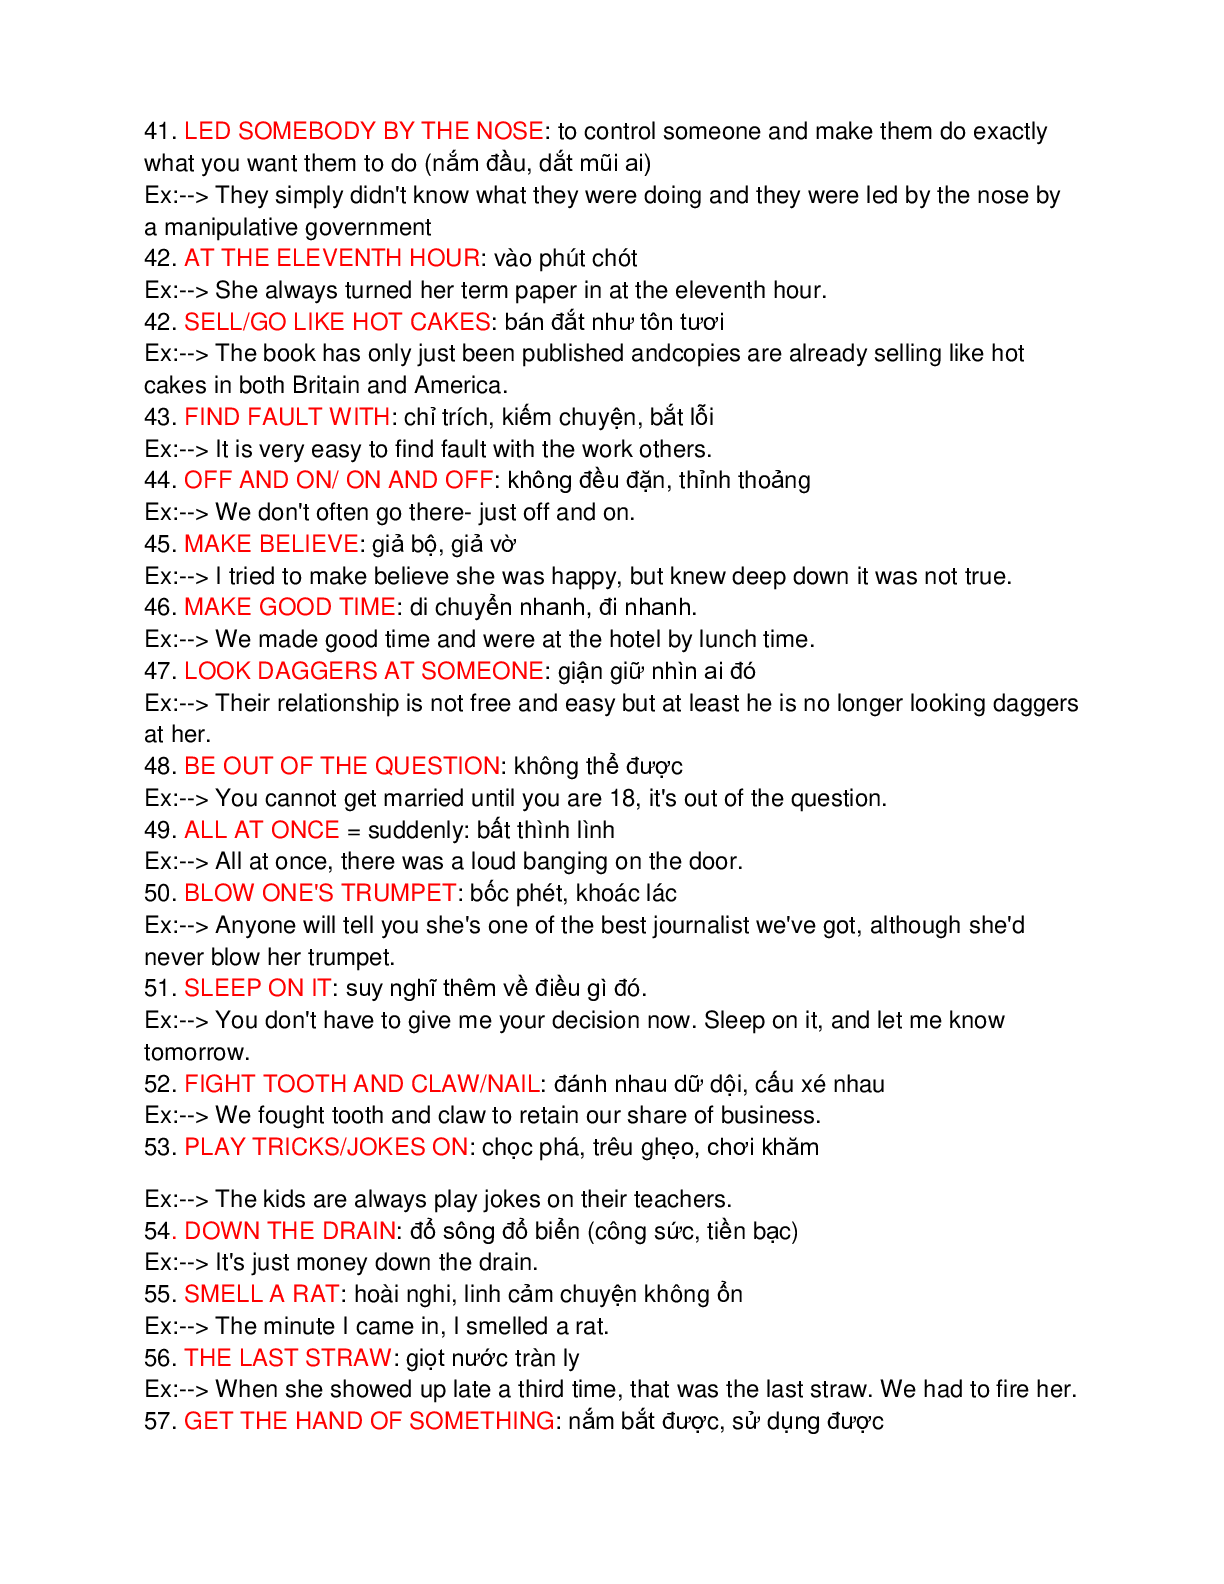 100 idioms quan trọng thường gặp trong đề thi đại học môn Tiếng Anh (trang 4)